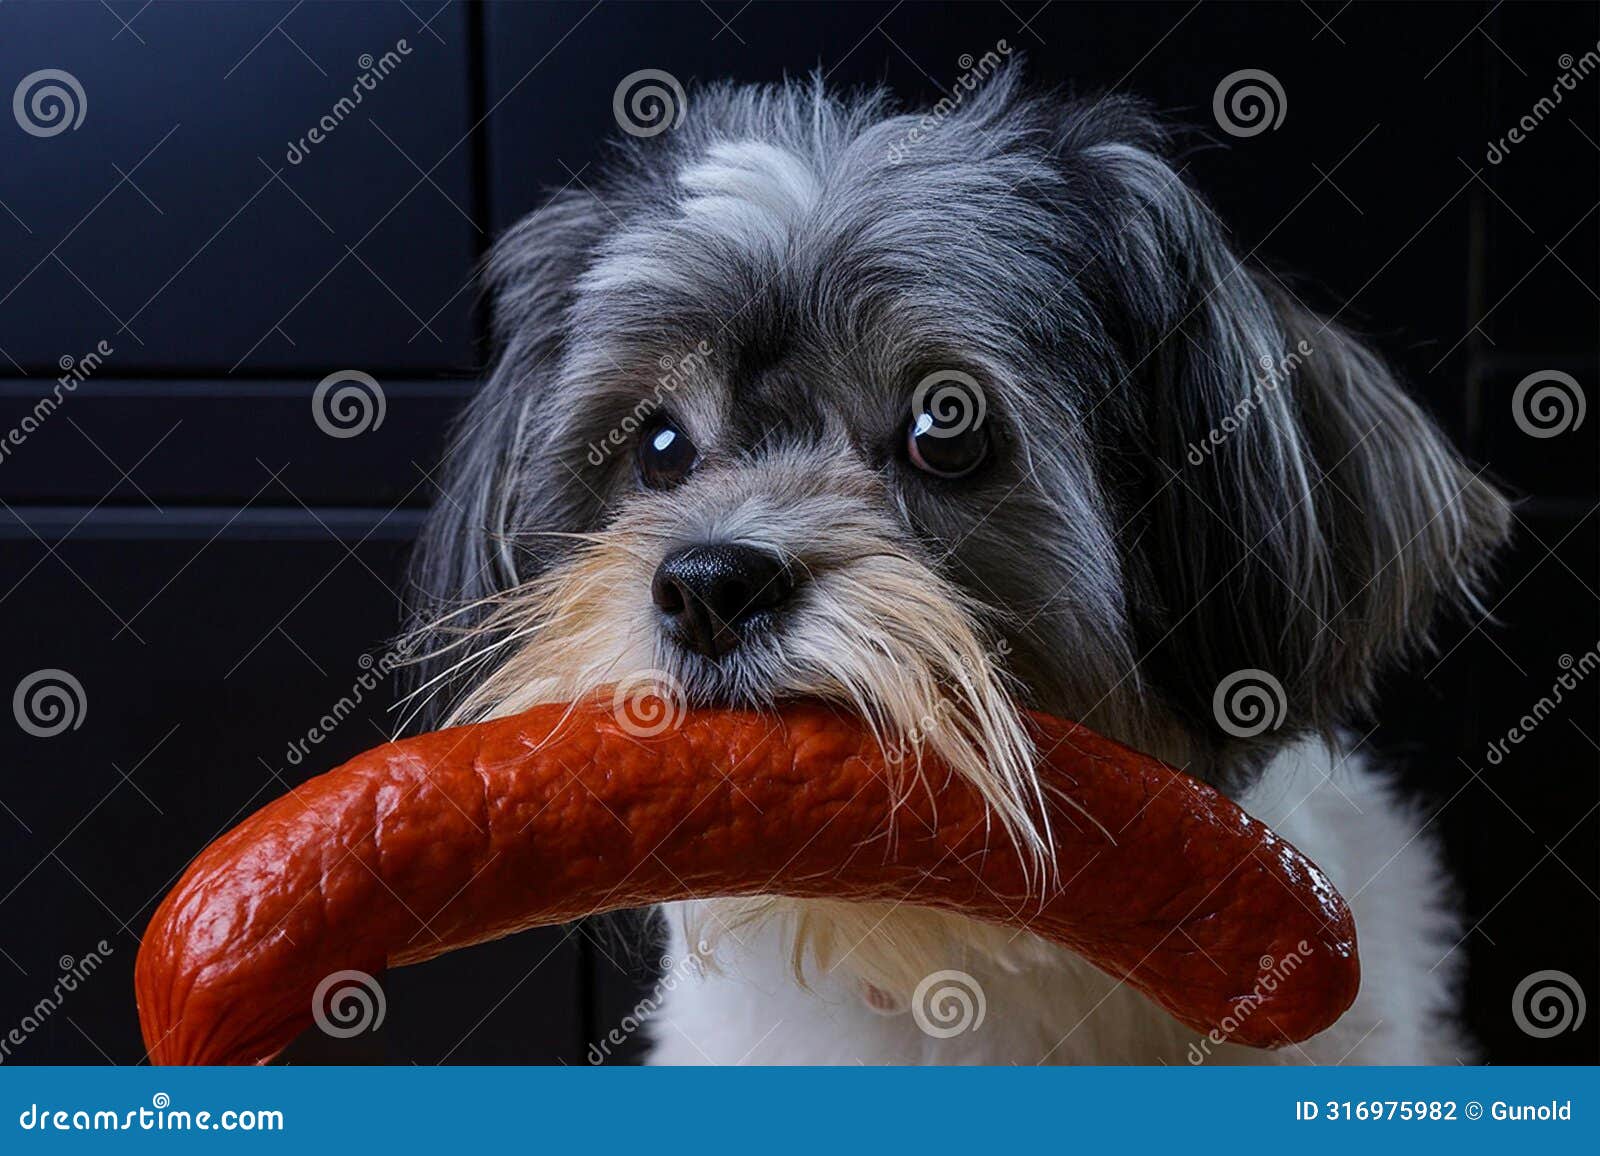 temptation, little dog has stolen a sausage